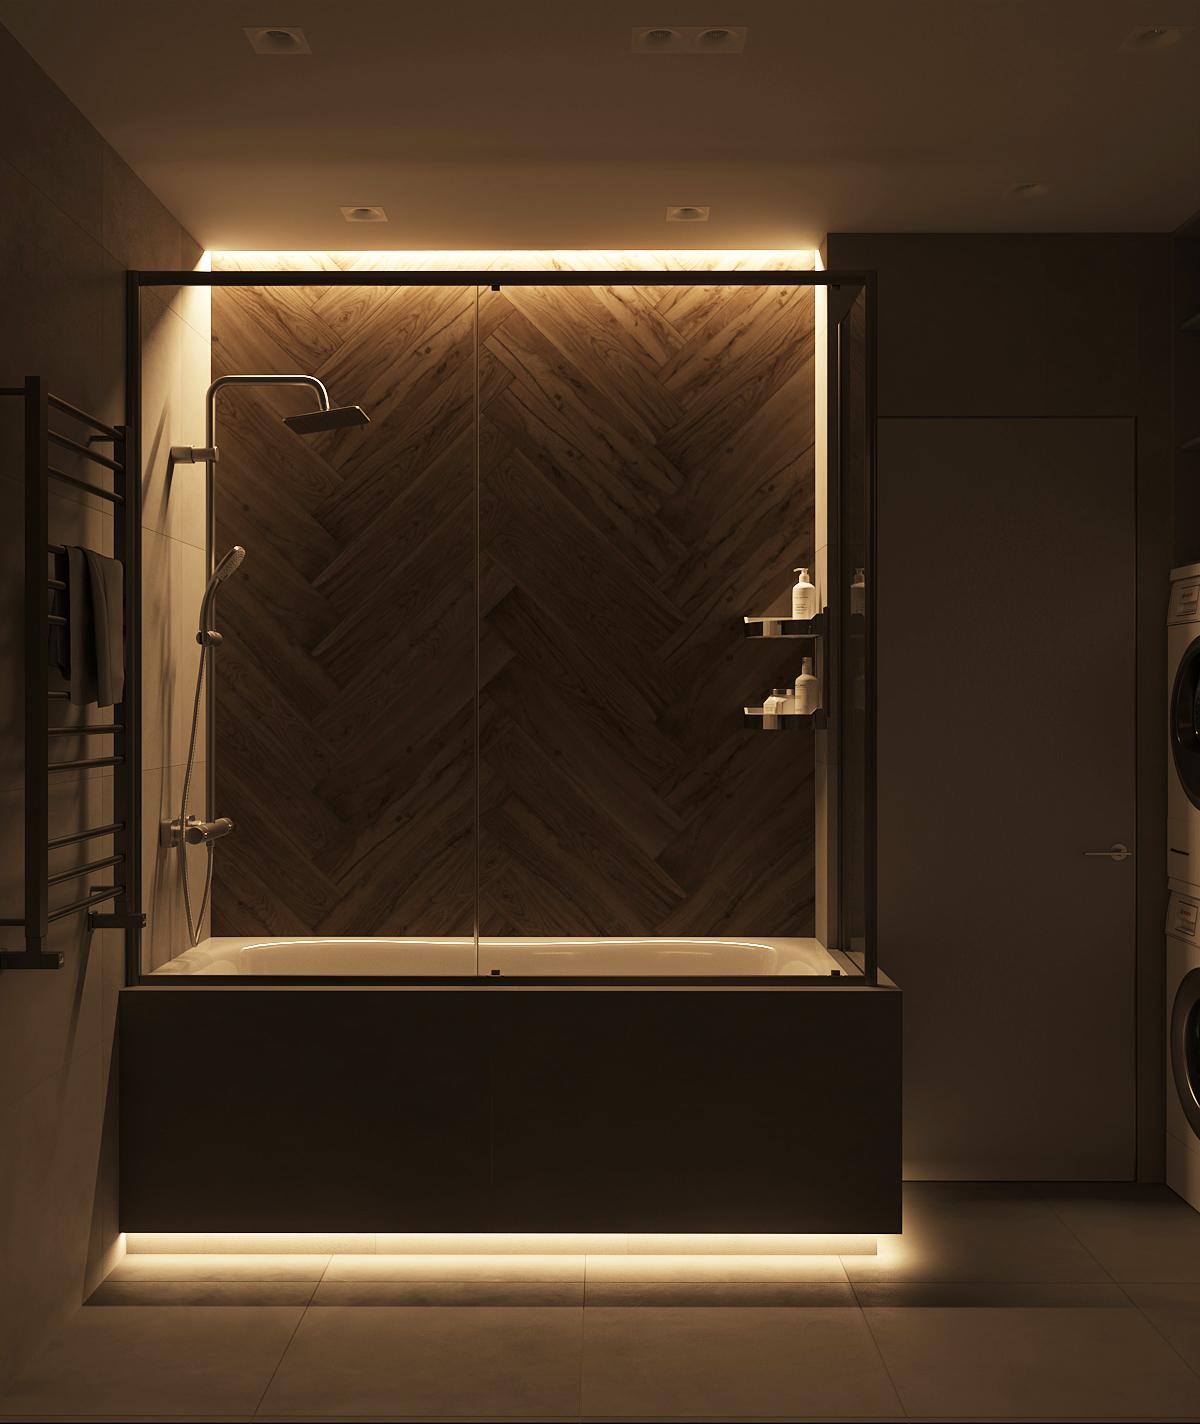 Интерьер ванной с подсветкой настенной и подсветкой светодиодной в стиле лофт